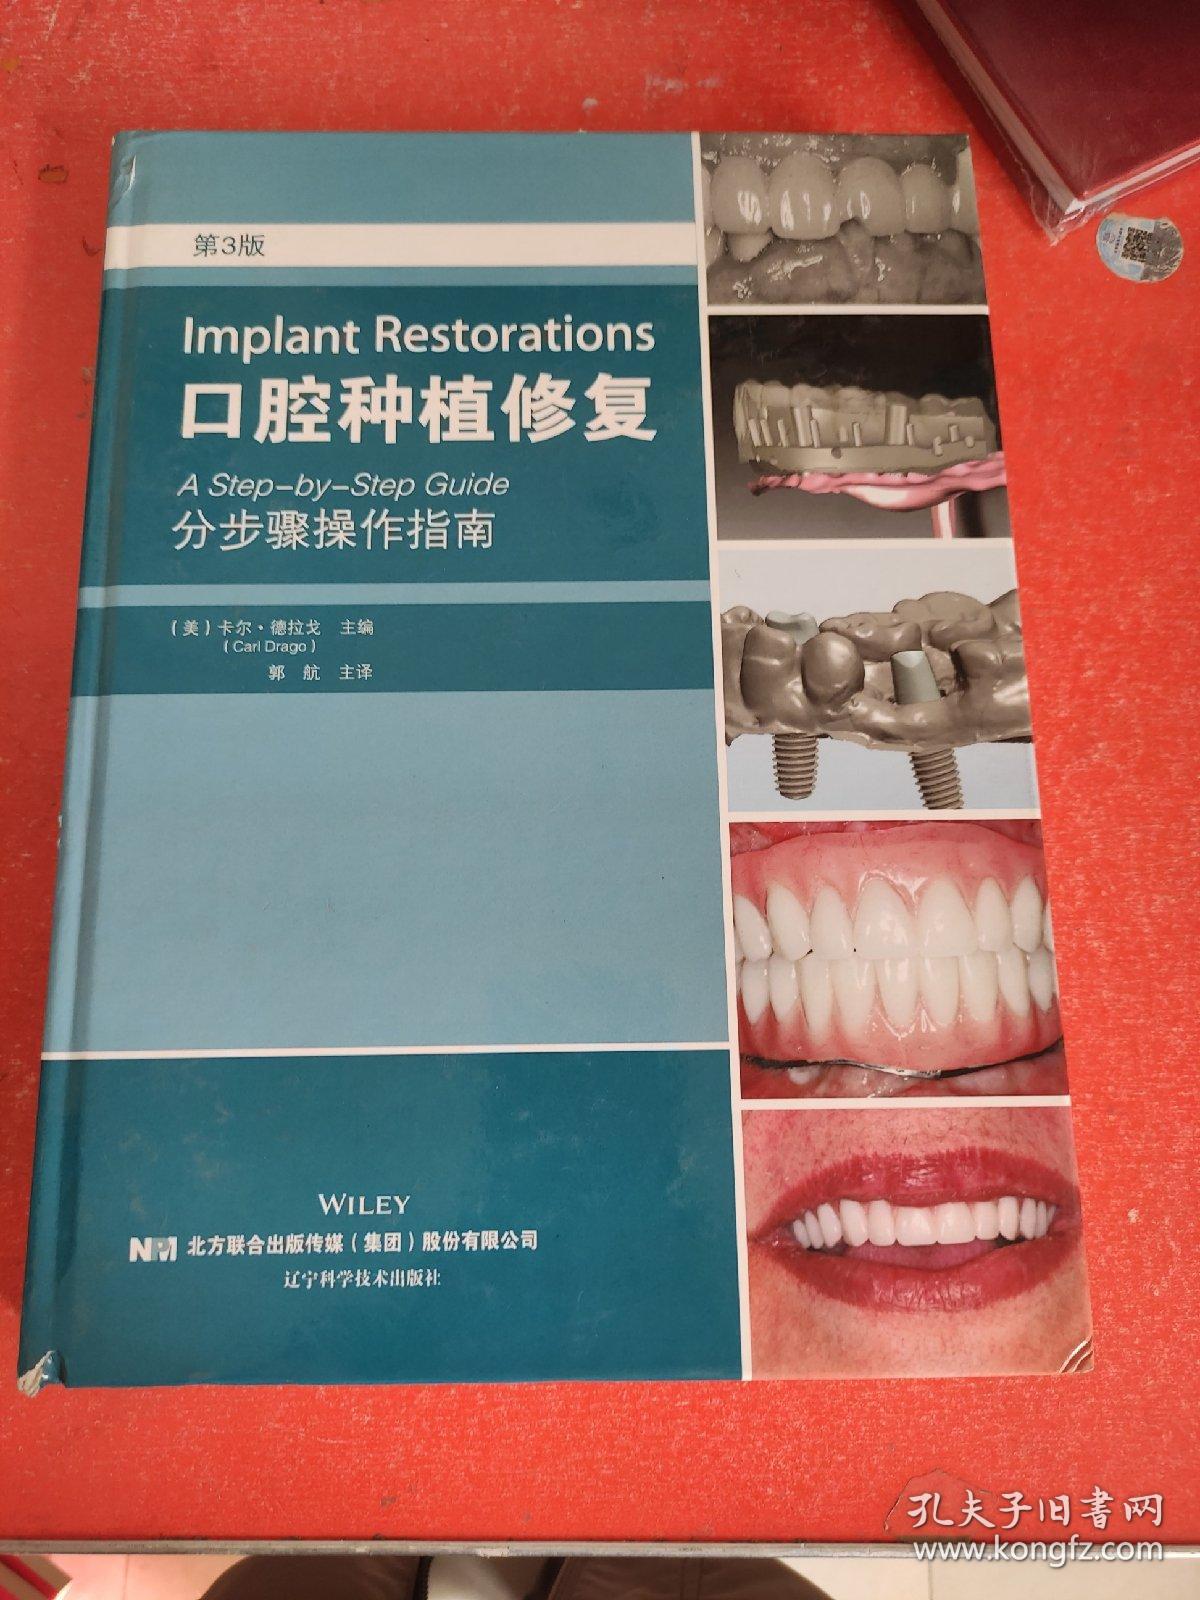 口腔种植修复：分步骤操作指南 第三版(书脊有微小破损不影响阅读)